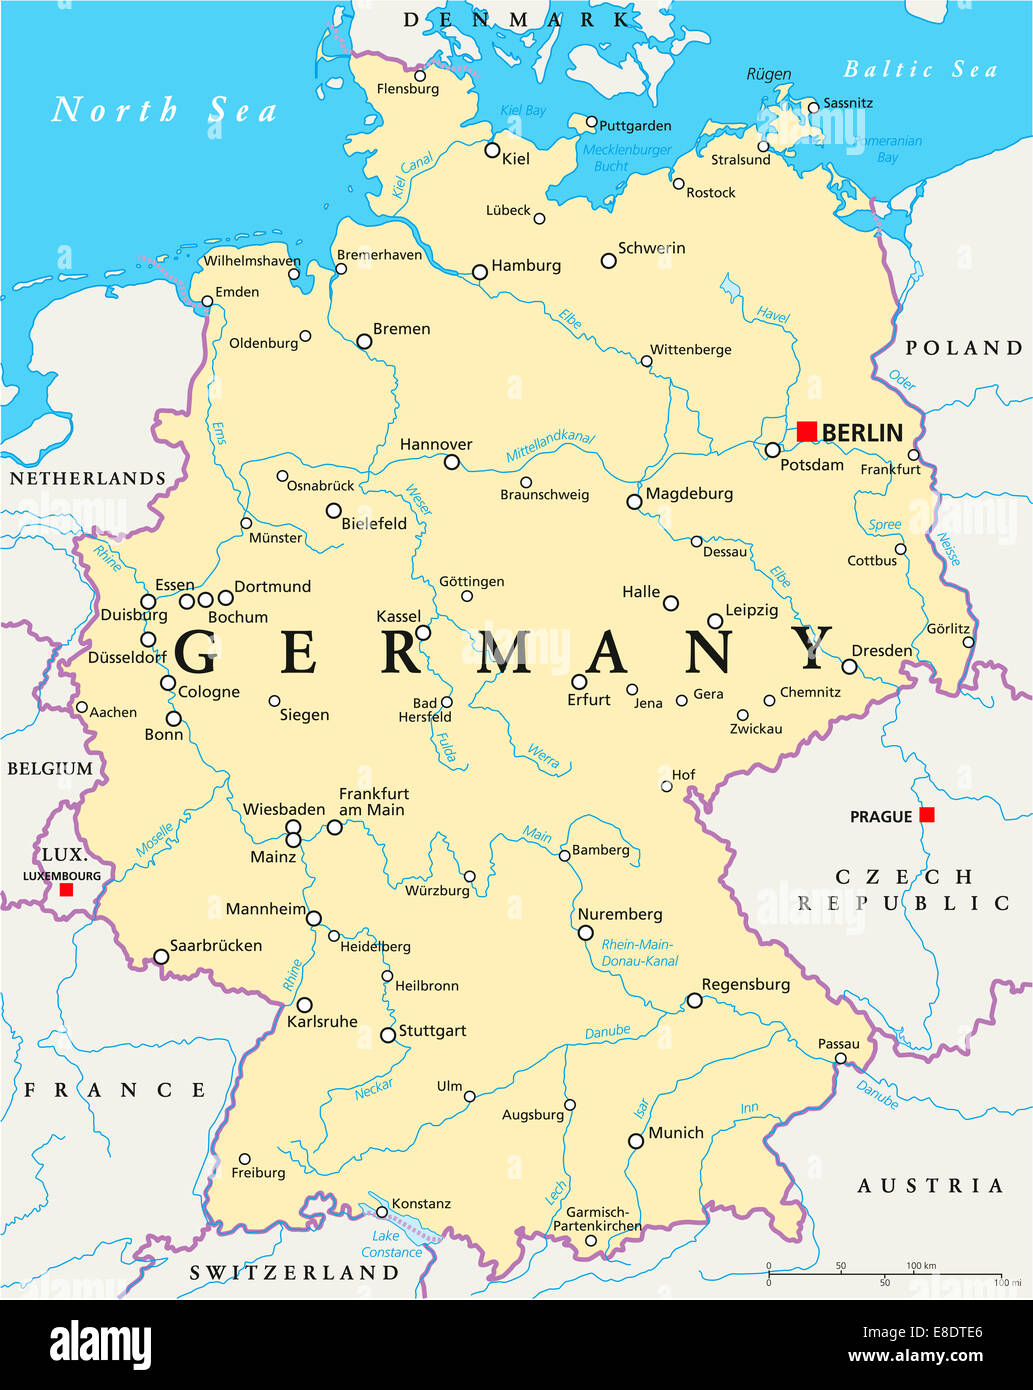 Alemania Mapa Político con capitales de Berlín, las fronteras nacionales, la mayoría de las ciudades importantes, ríos y lagos. Rótulos En inglés/escalado. Foto de stock